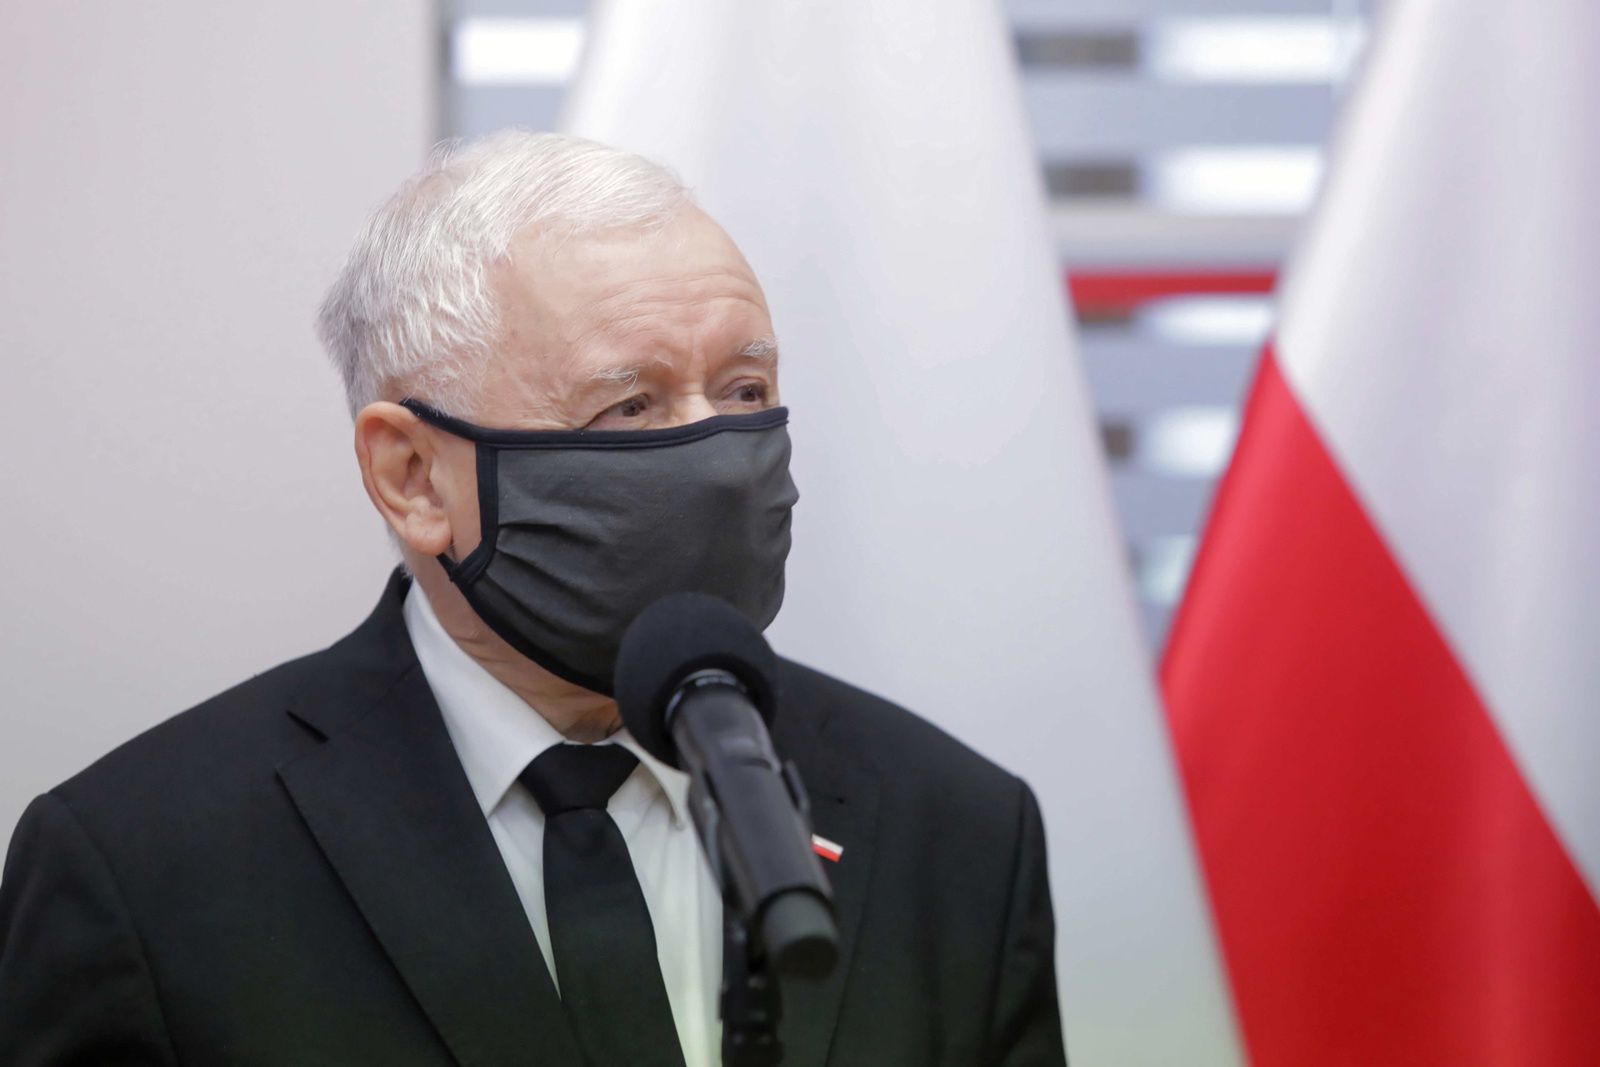 "Chcesz pokoju, szykuj wojnę". Kaczyński zapowiedział nową ustawę